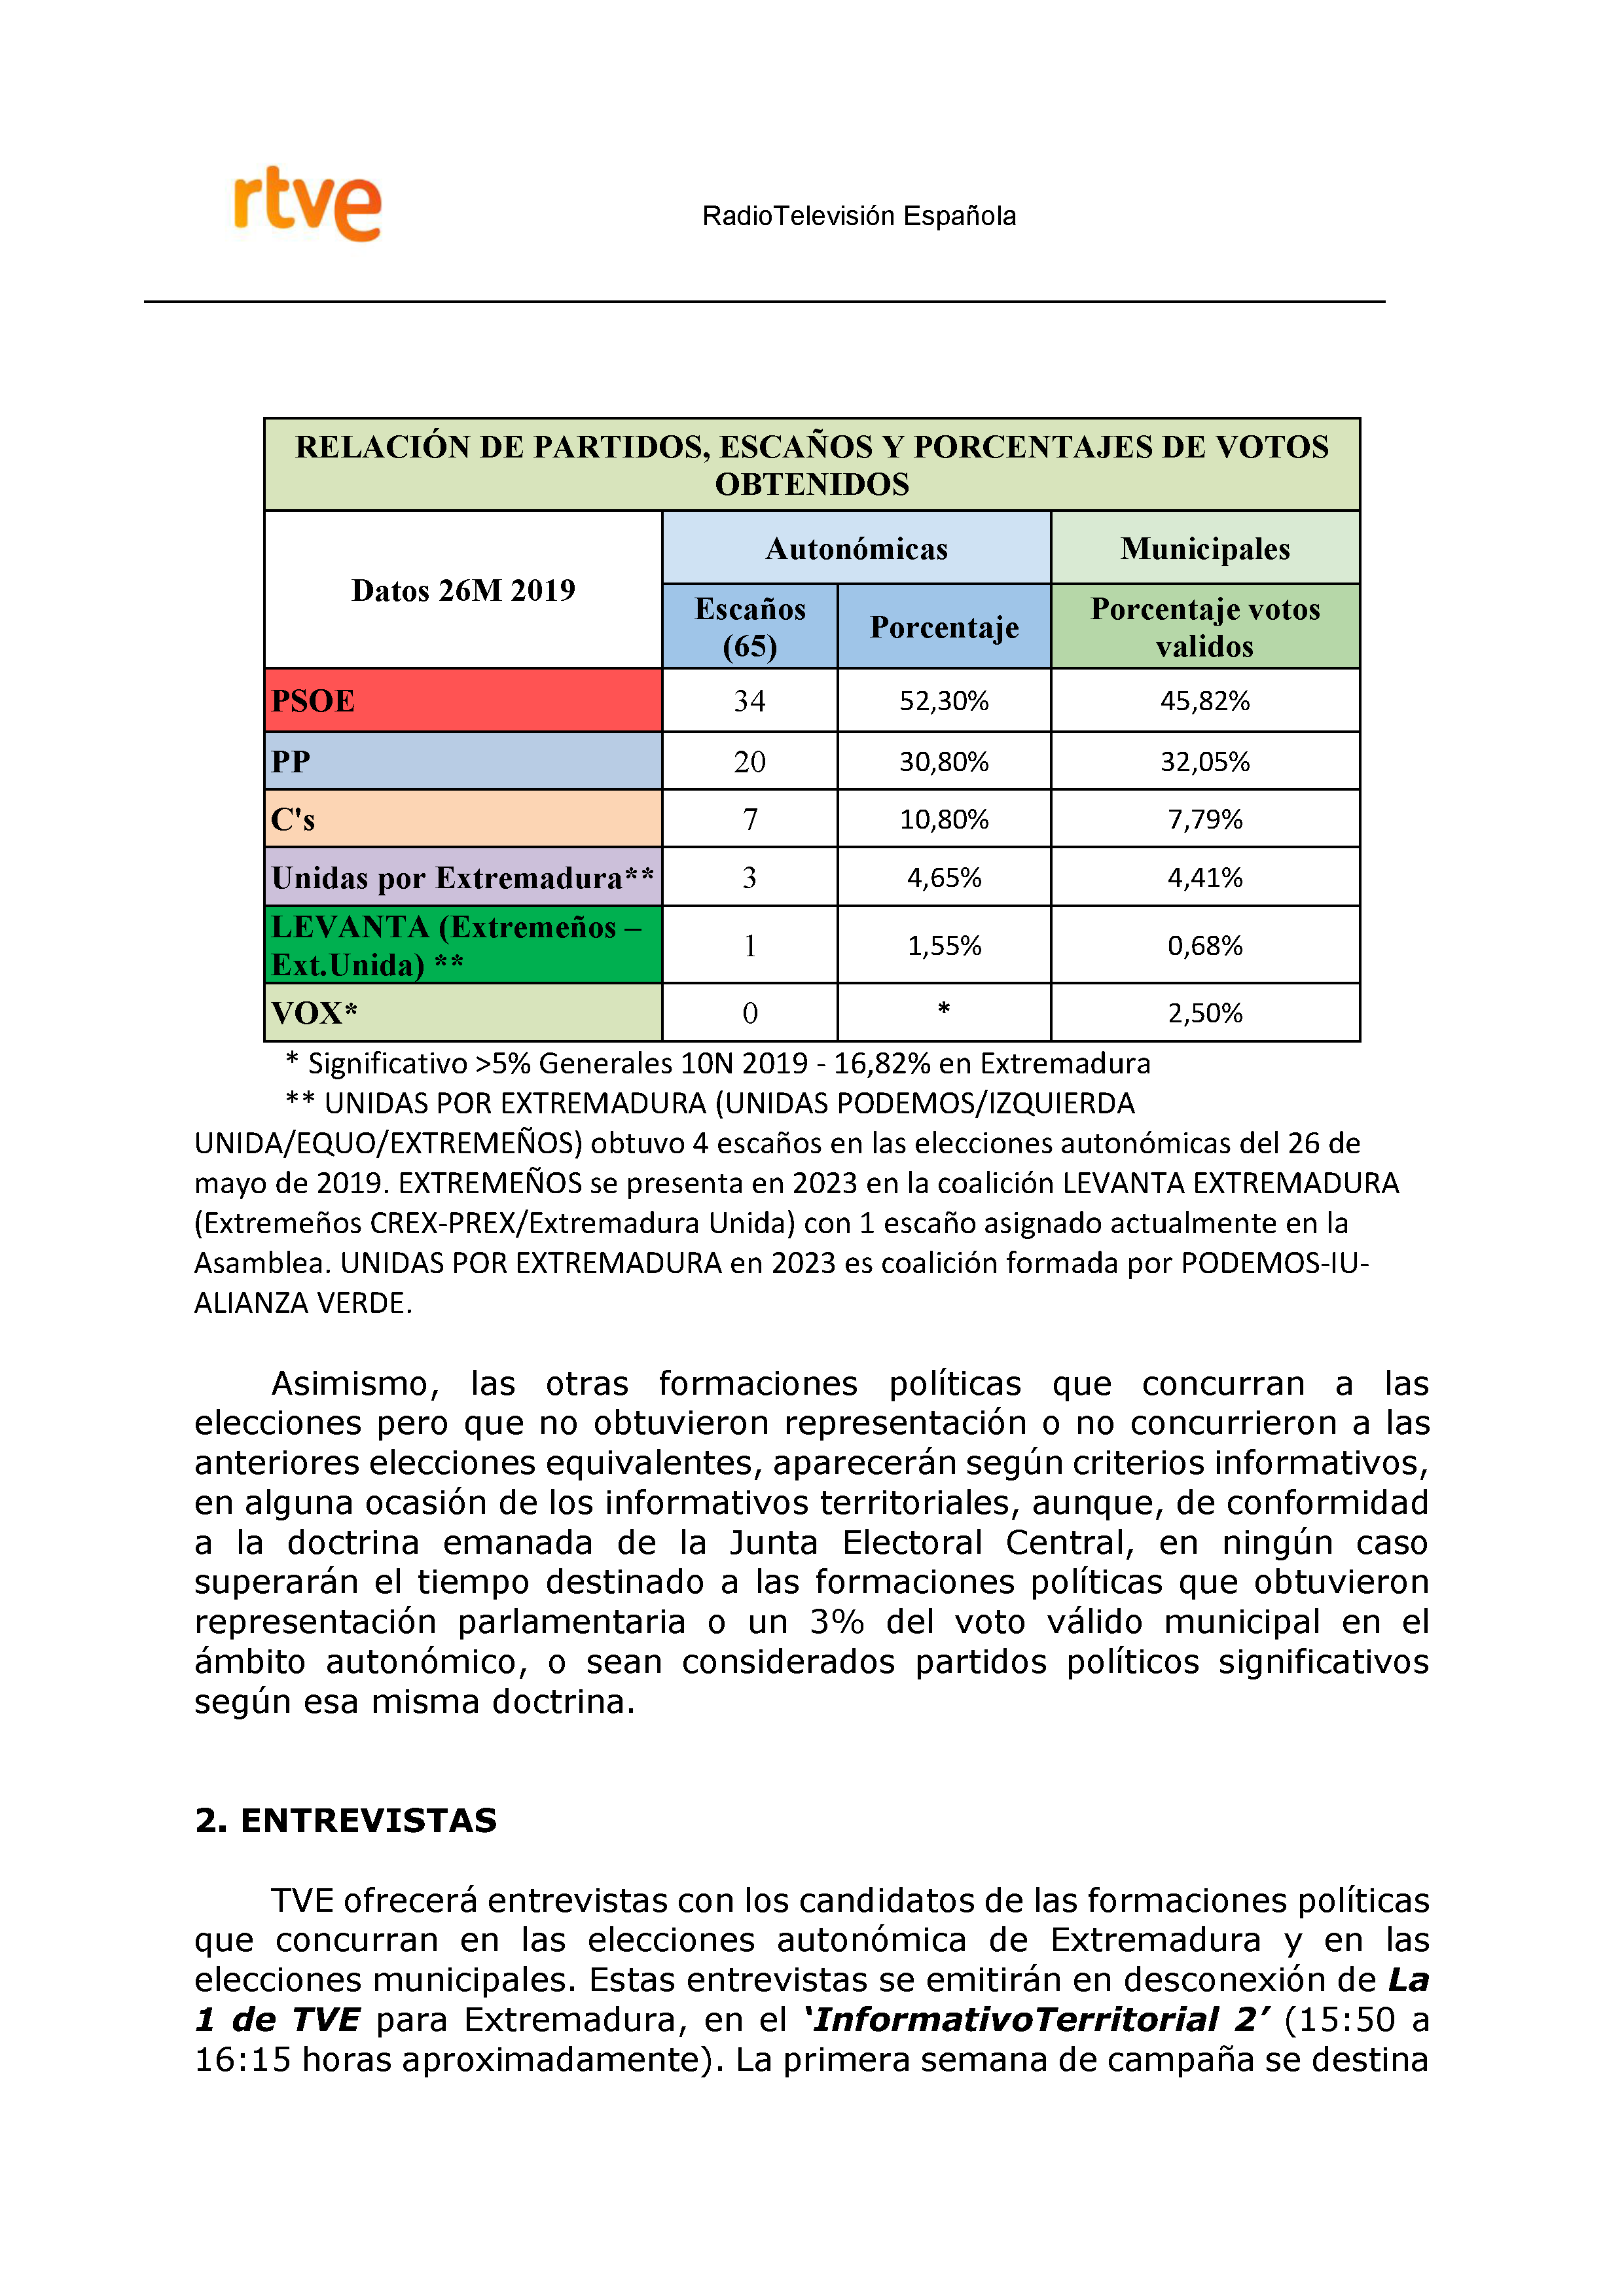 PLAN DE COBERTURA INFORMATIVA RTVE en Extremadura ELECCIONES MUNICIPALES Y AUTONÃ“MICAS Pag 6